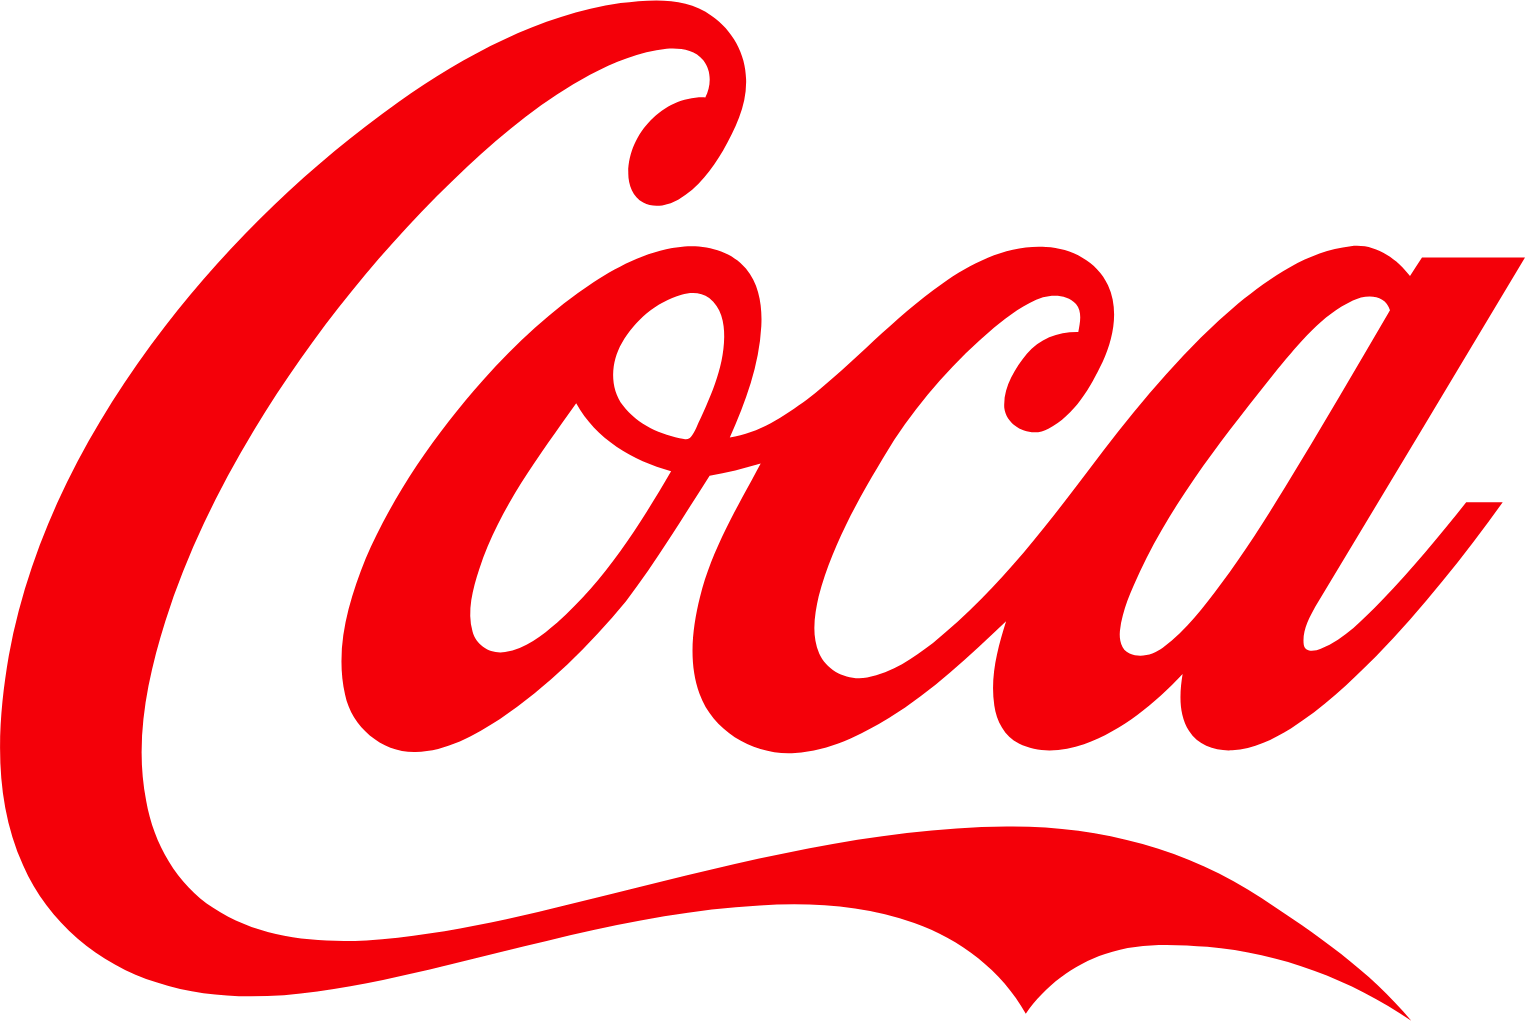 Coca-Cola Bottlers Japan logo (PNG transparent)